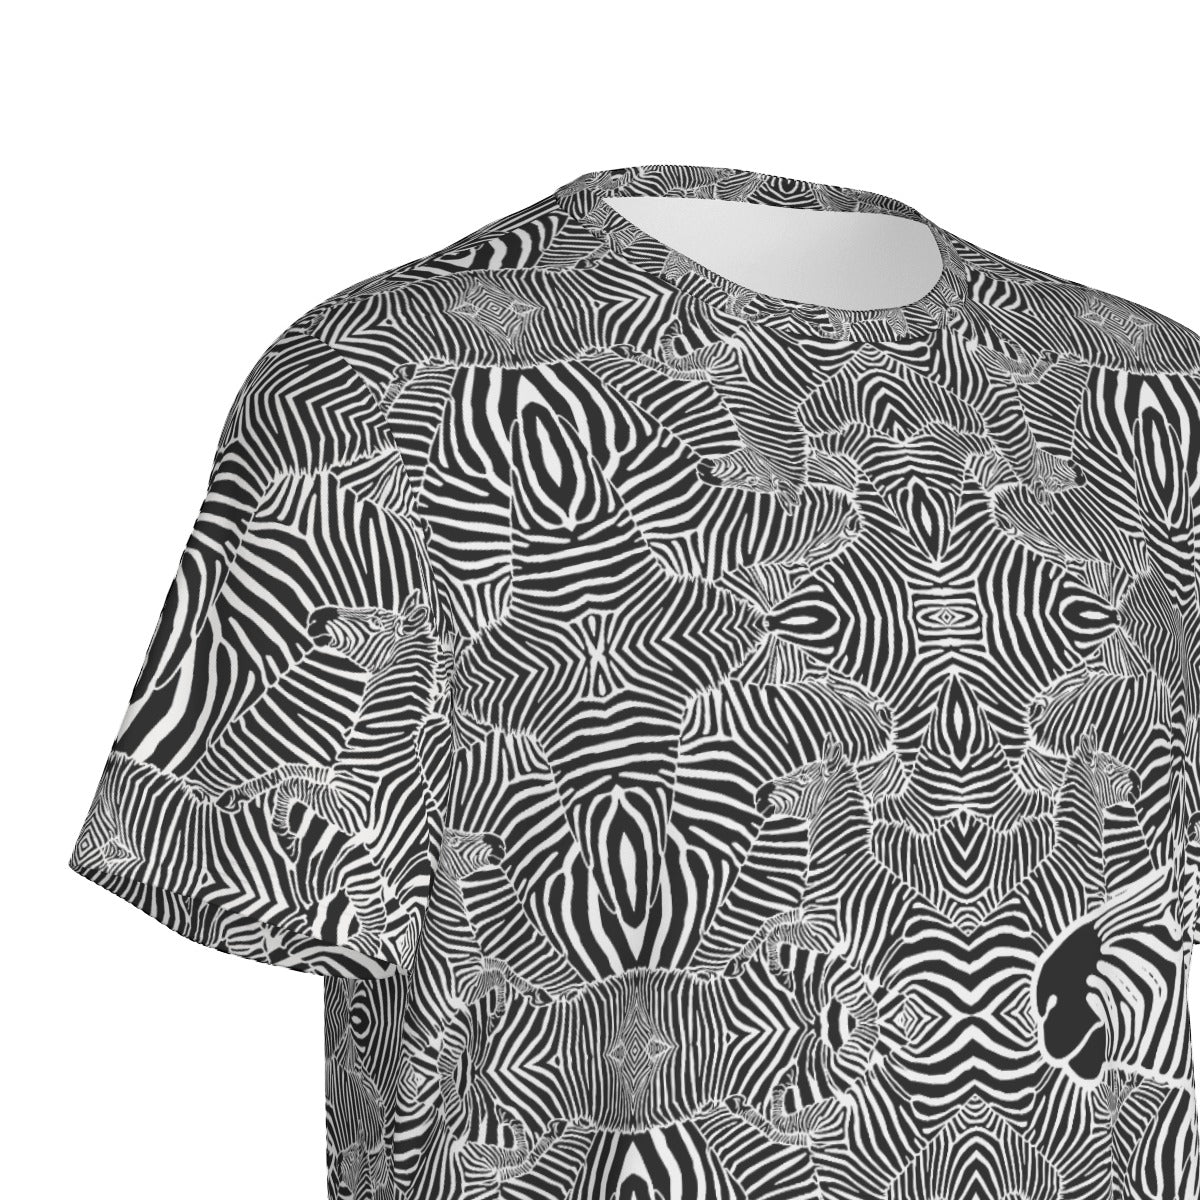 Zebra Vibe T-Shirt